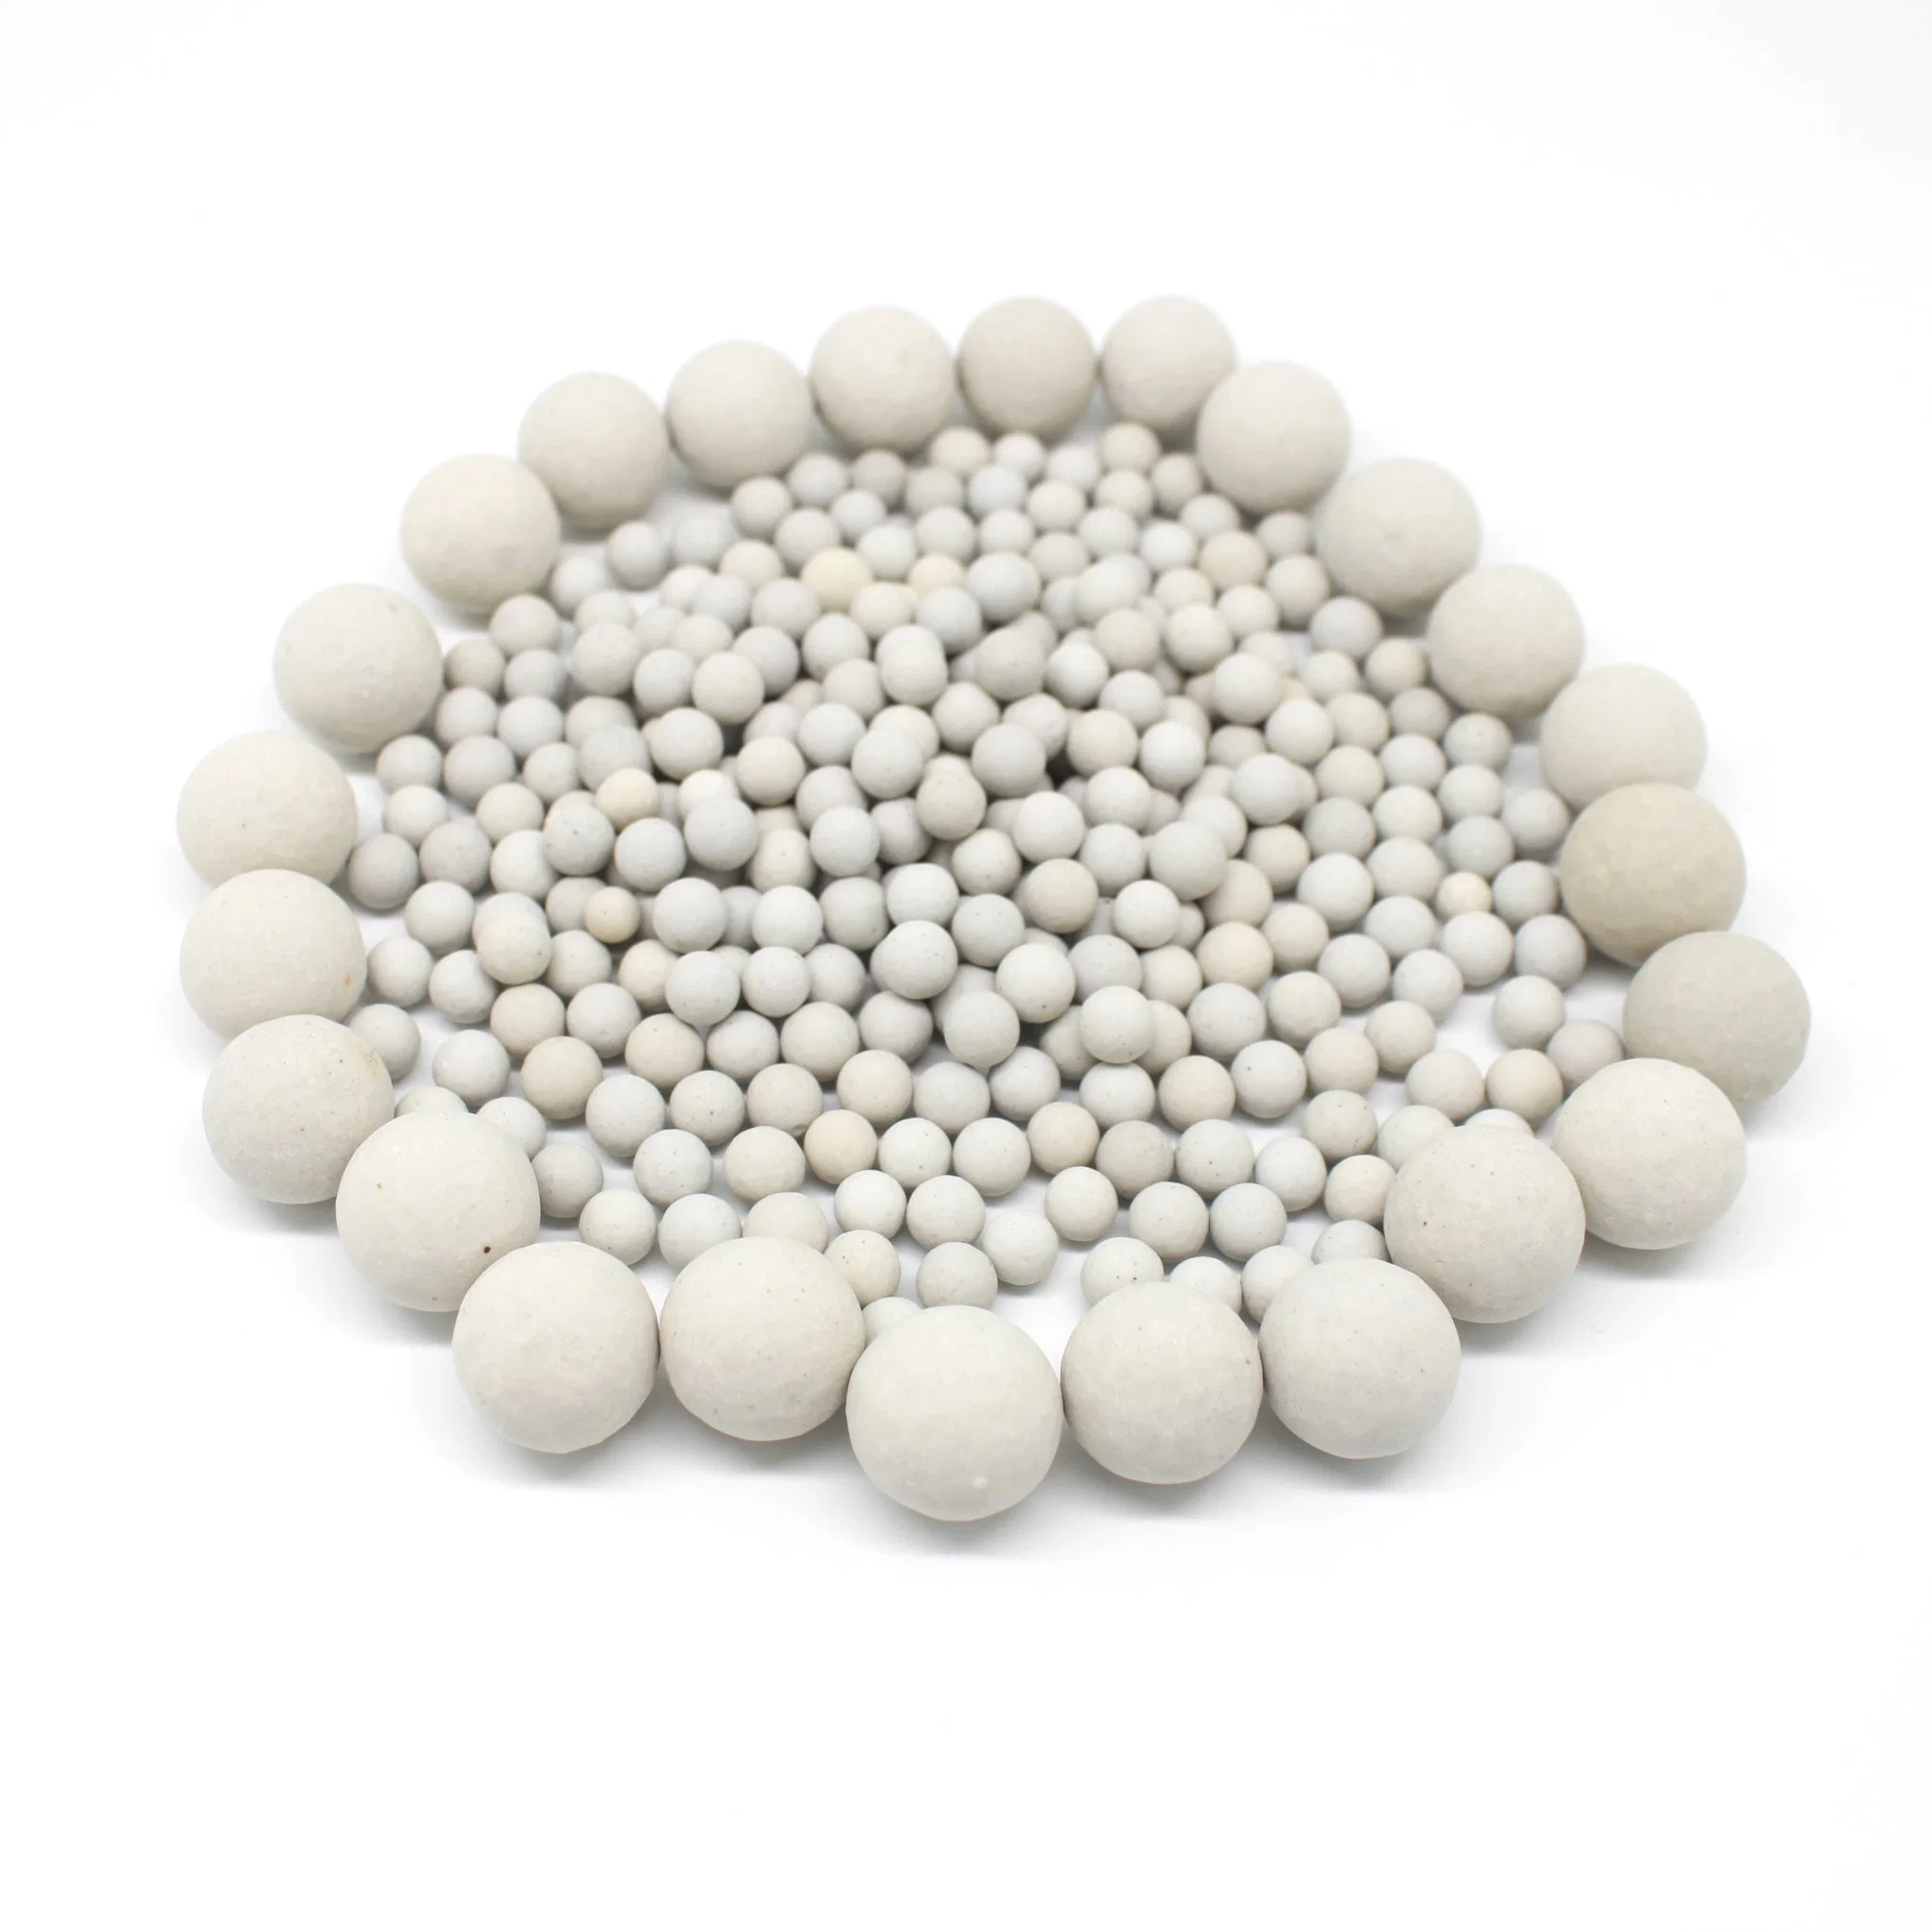 Support Catalyst 17-23% Inert Alumina Ceramic Ball 3-70mm